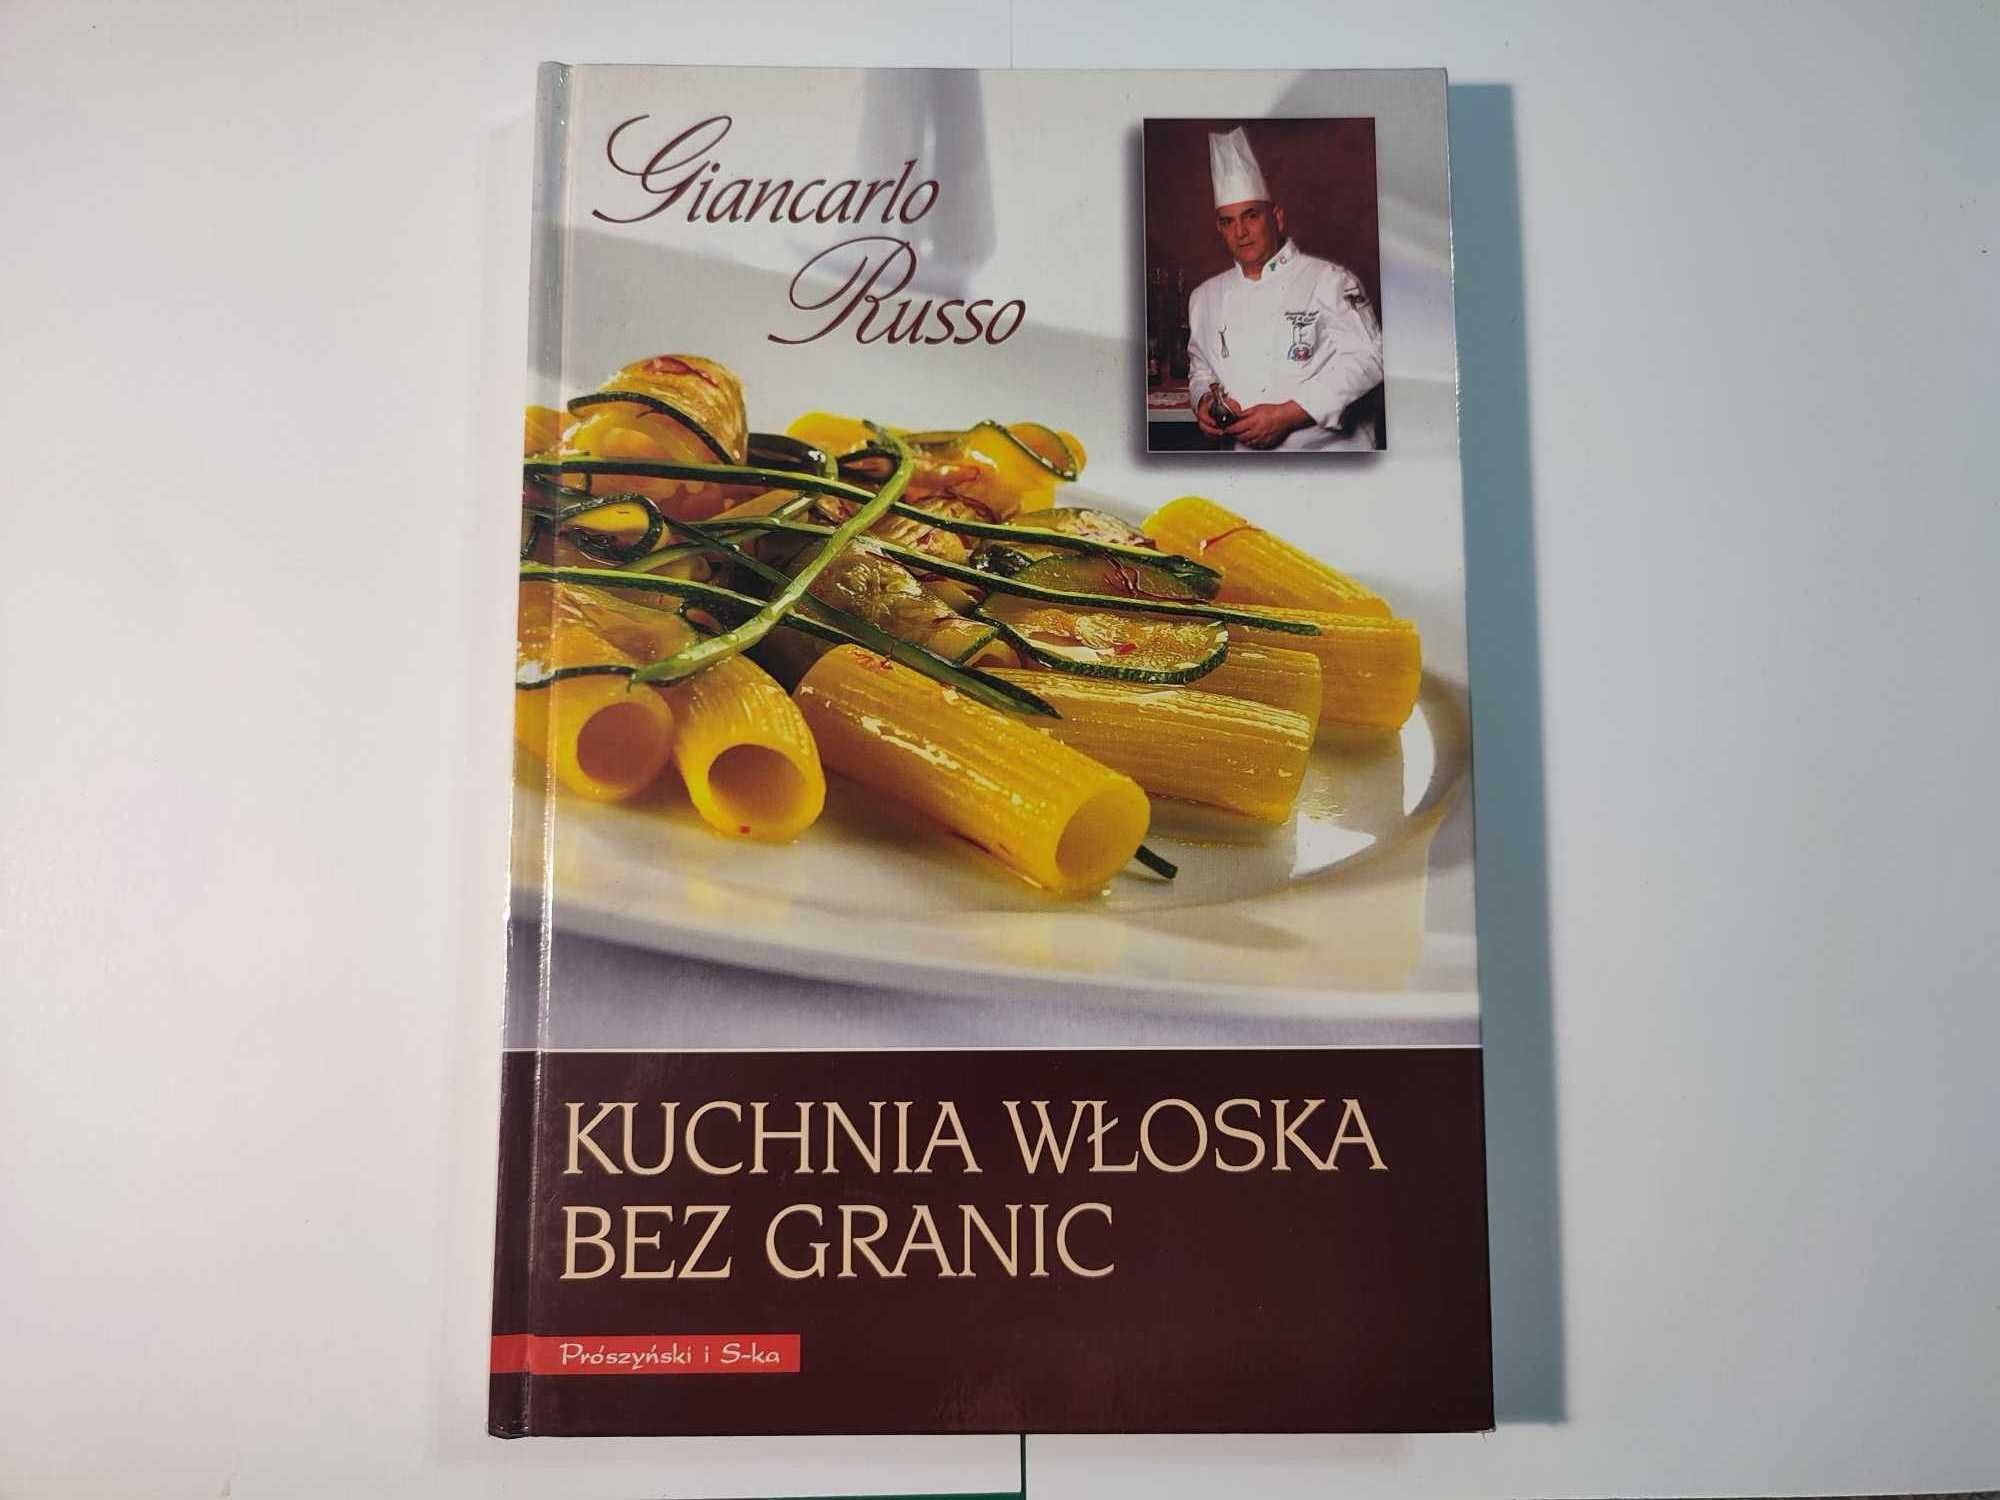 Kuchnia włoska bez granic Giancarlo Russo